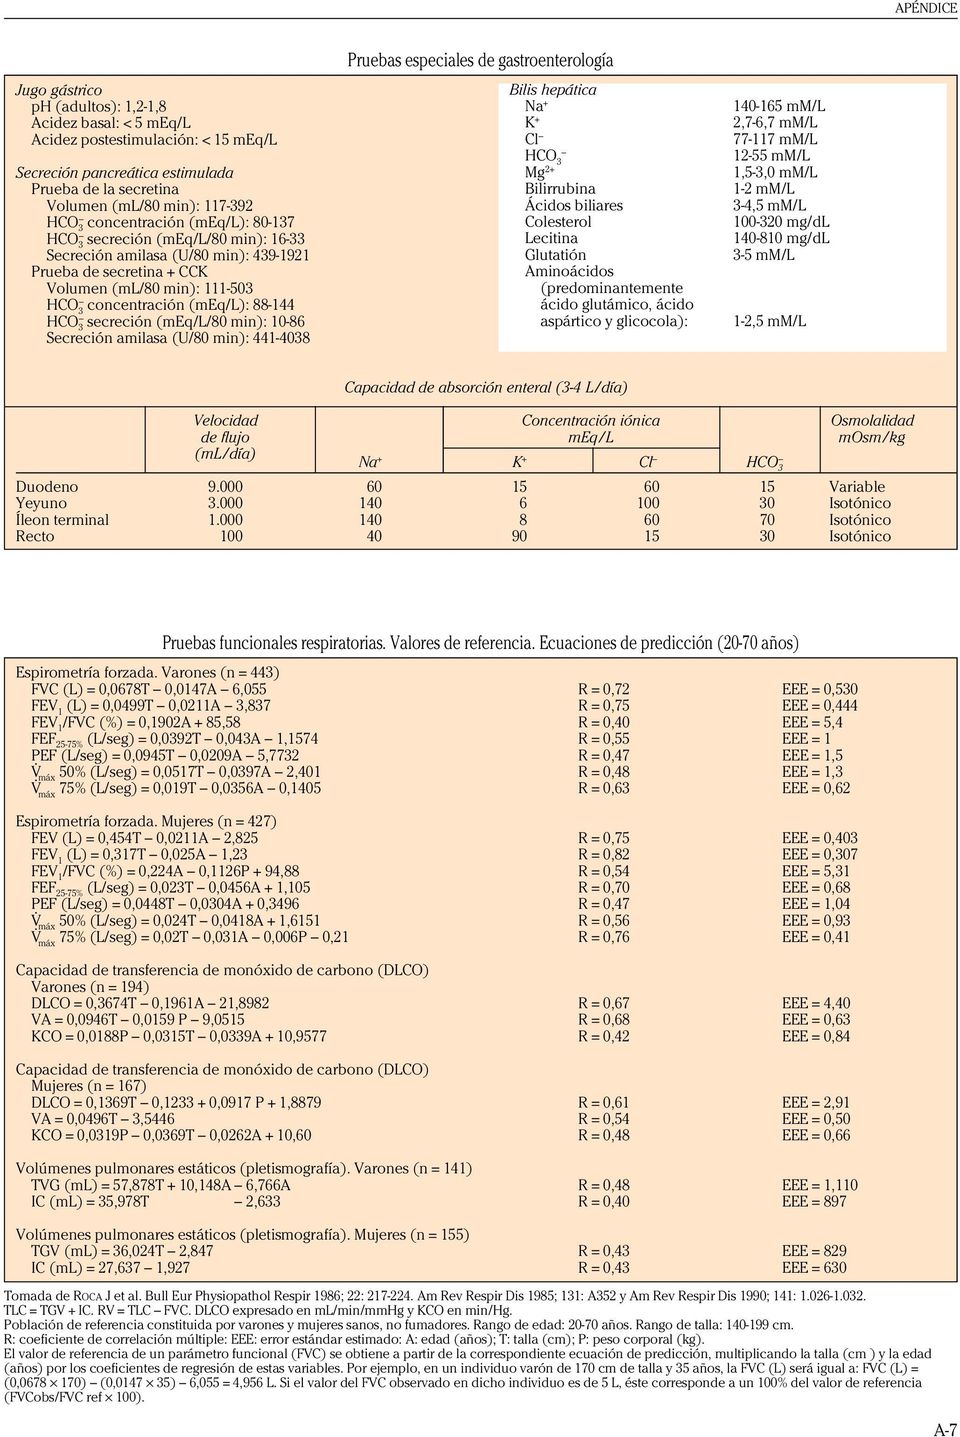 10-86 Secreción amilasa (U/80 min): 441-4038 Pruebas especiales de gastroenterología Bilis hepática Na + K + Cl HCO 3 Mg 2+ Bilirrubina Ácidos biliares Colesterol Lecitina Glutatión Aminoácidos